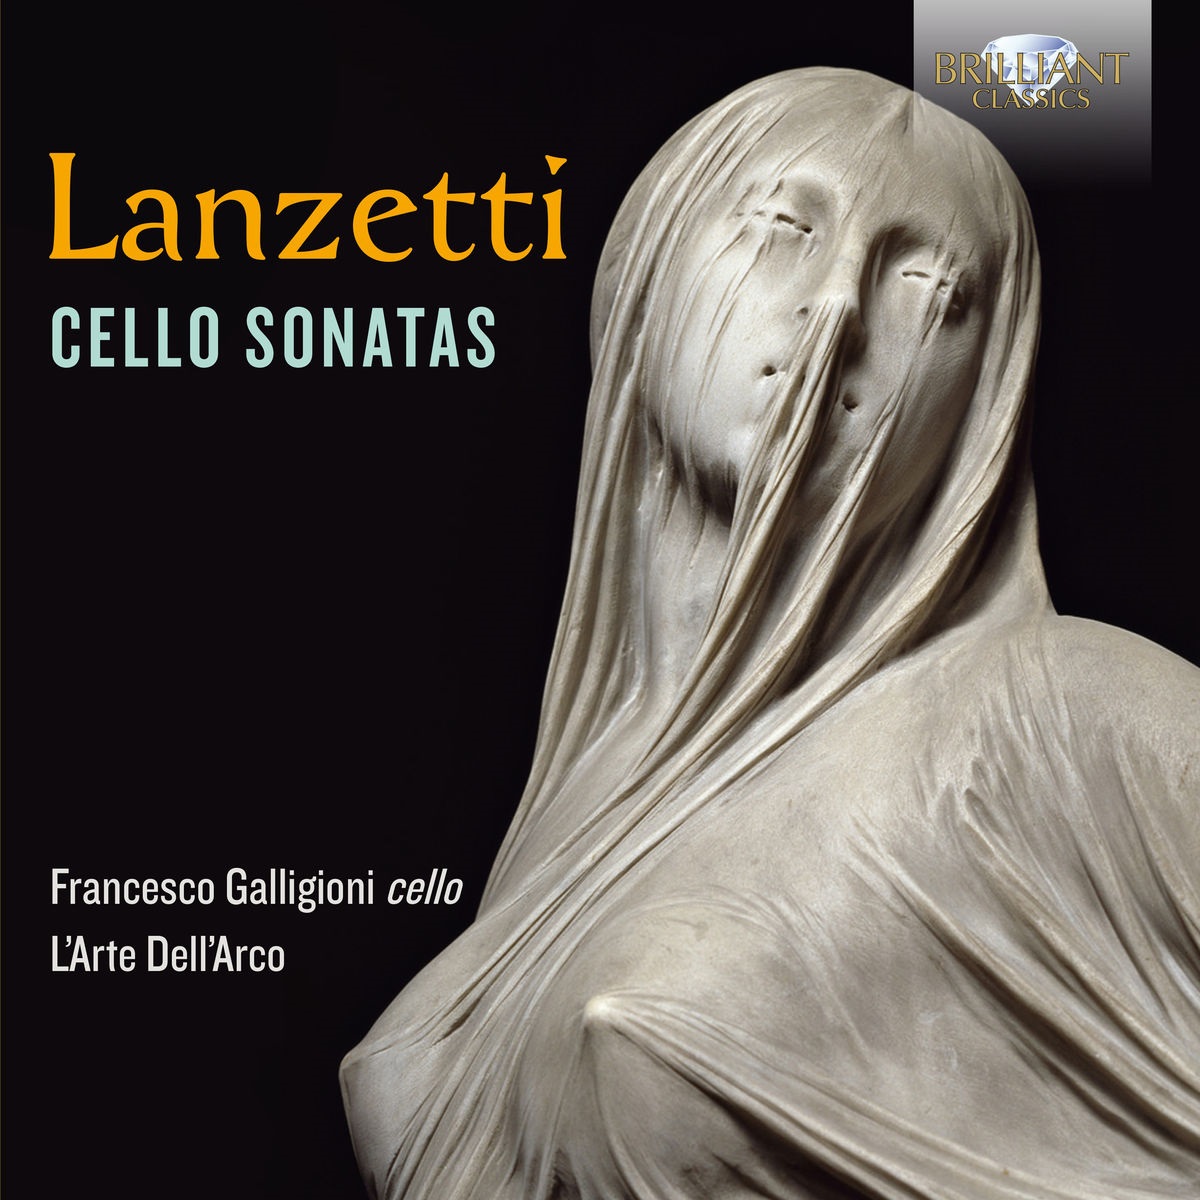 L’Arte Dell’Arco, Francesco Galligioni & Roberto Loreggian - Lanzetti: Cello Sonatas (2018) [FLAC 24bit/88,2kHz]